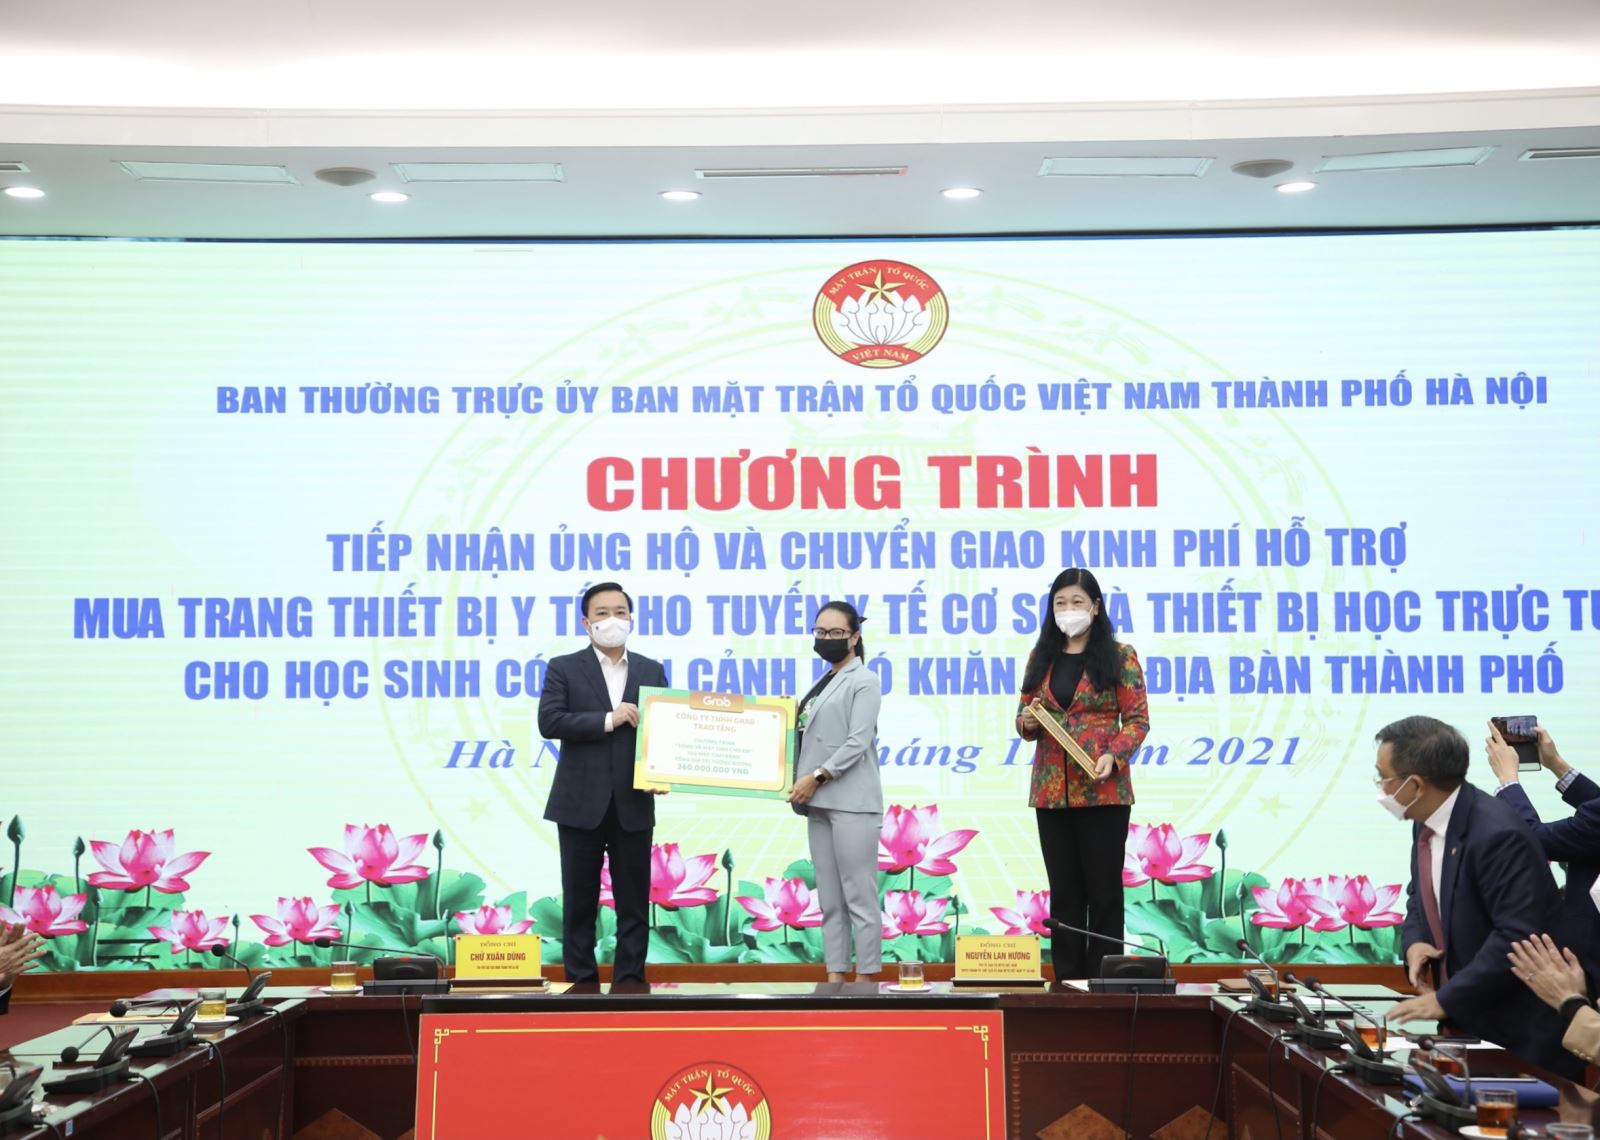 Grab Việt Nam đã trao tặng 100 máy tính bảng, tương đương 360.000.000 đồng  cho Ủy ban Mặt trận Tổ quốc Việt Nam TP. Hà Nội